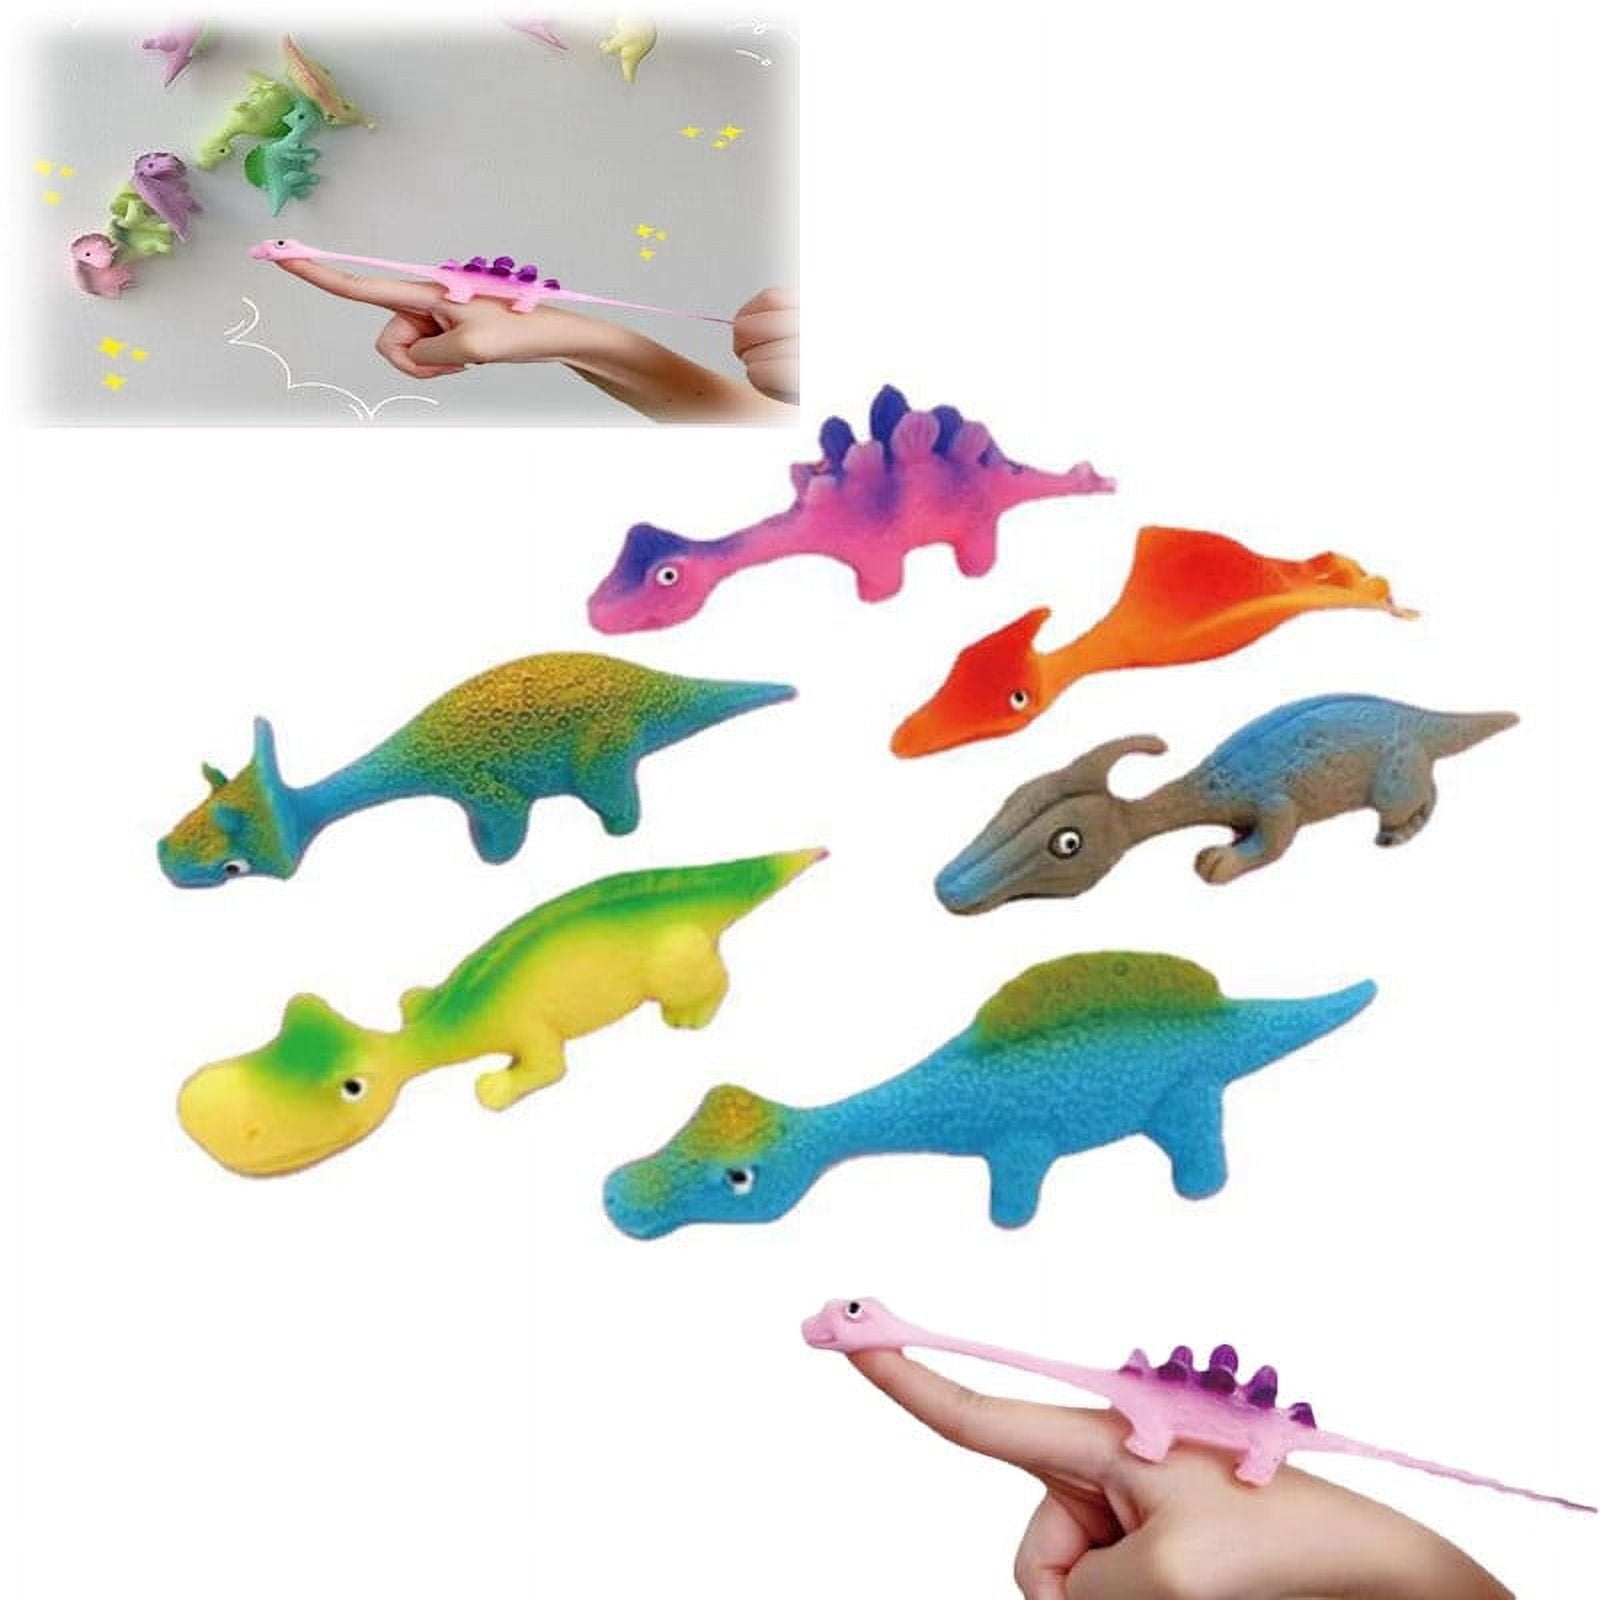 Slingshot Dino FY5-F016 - FOLUCK-Novelty toys